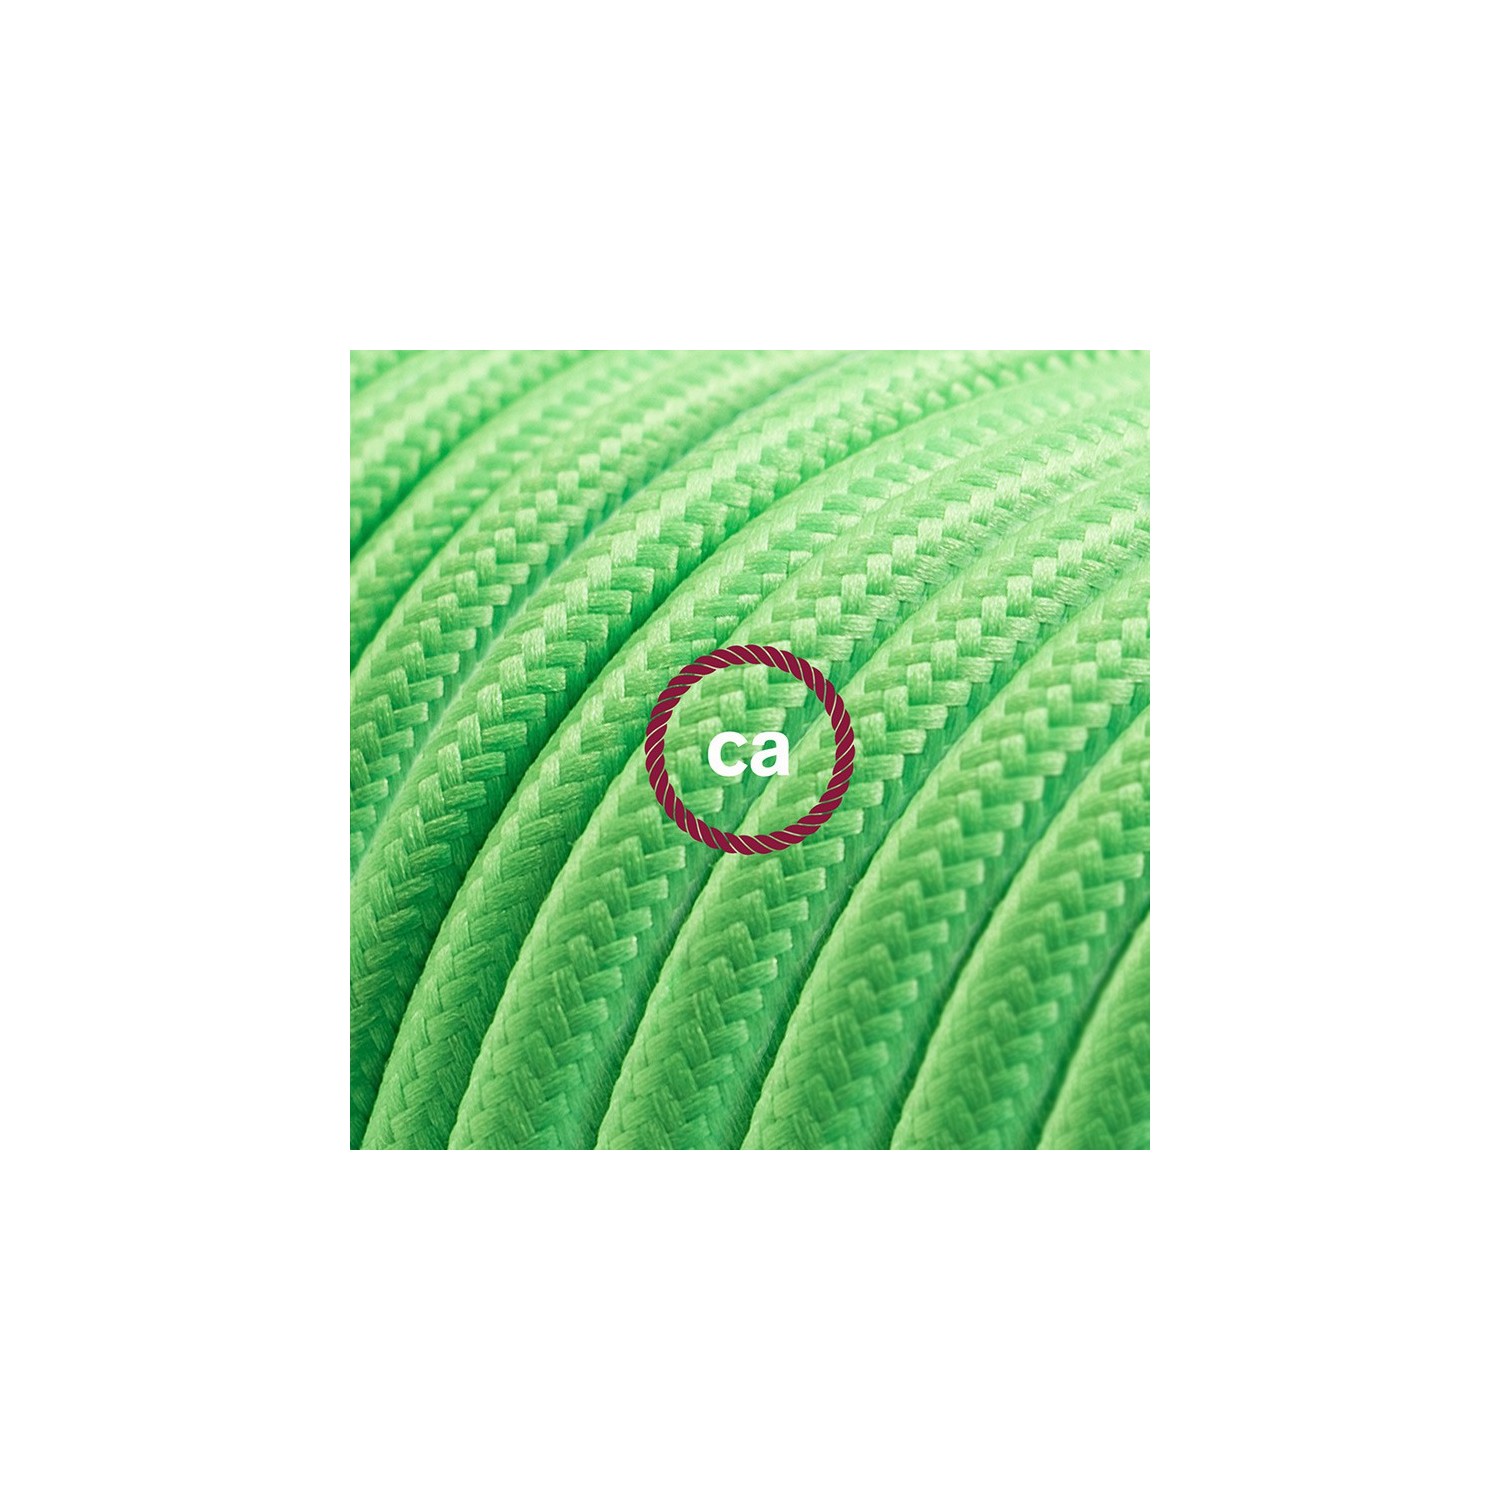 Verlengkabel 2P 10A met rond flexibel strijkijzersnoer RM18 van limoen groen viscose